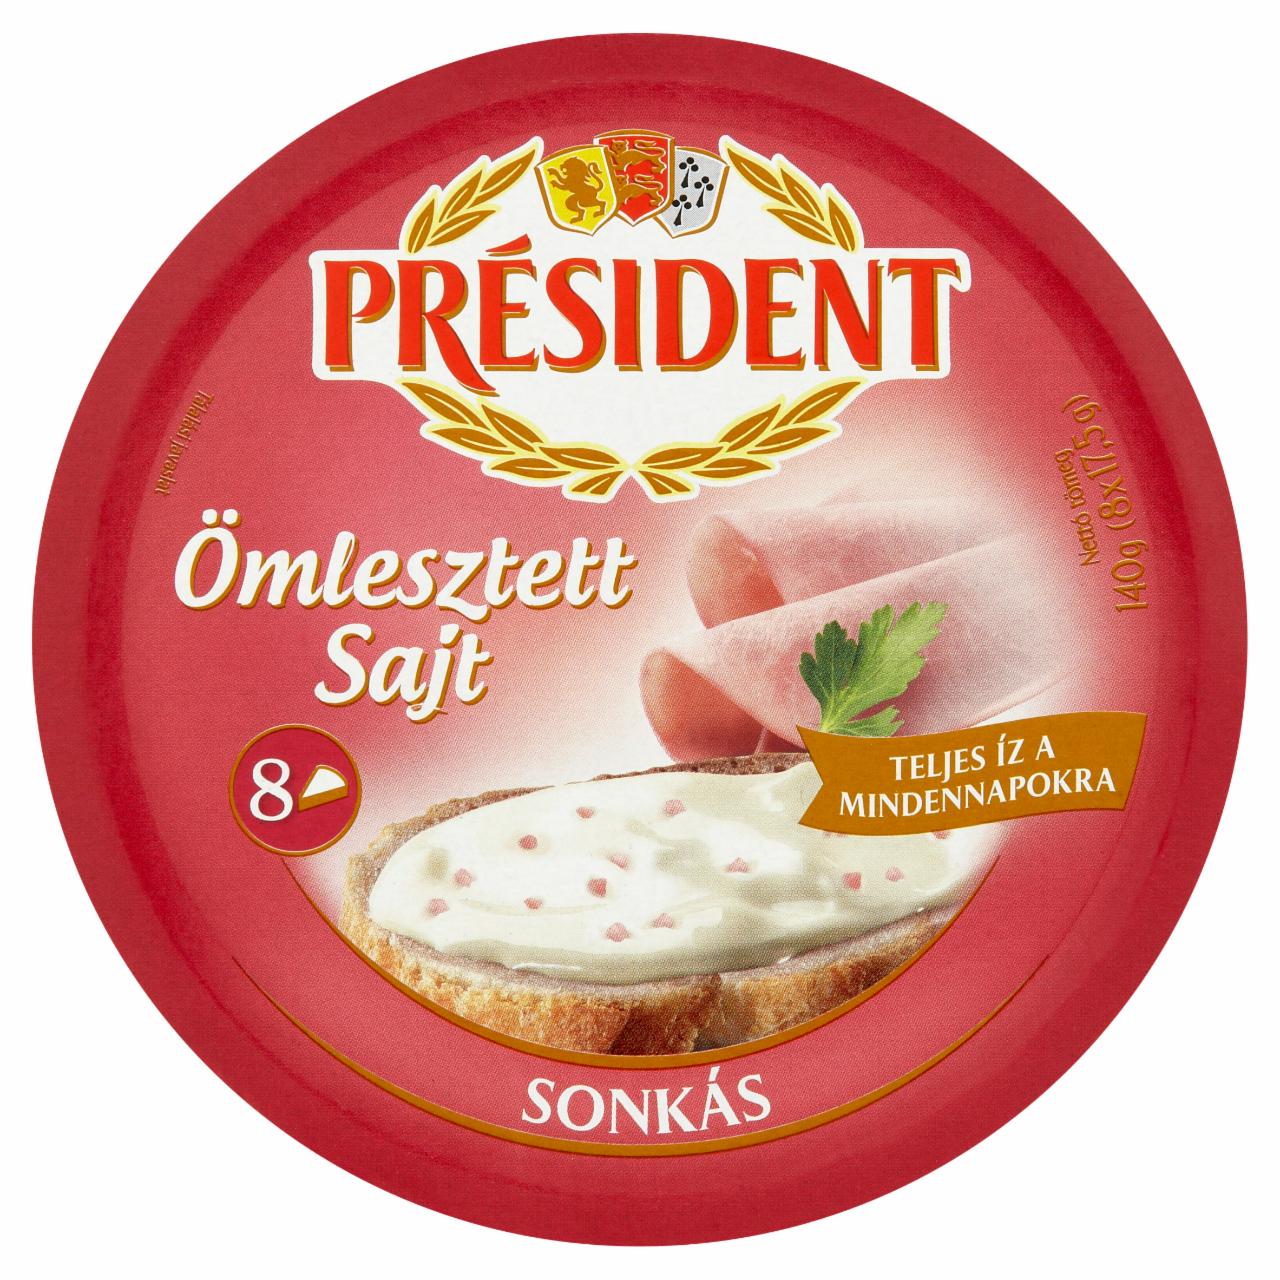 Képek - Président sonkás ömlesztett sajt 8 x 17,5 g